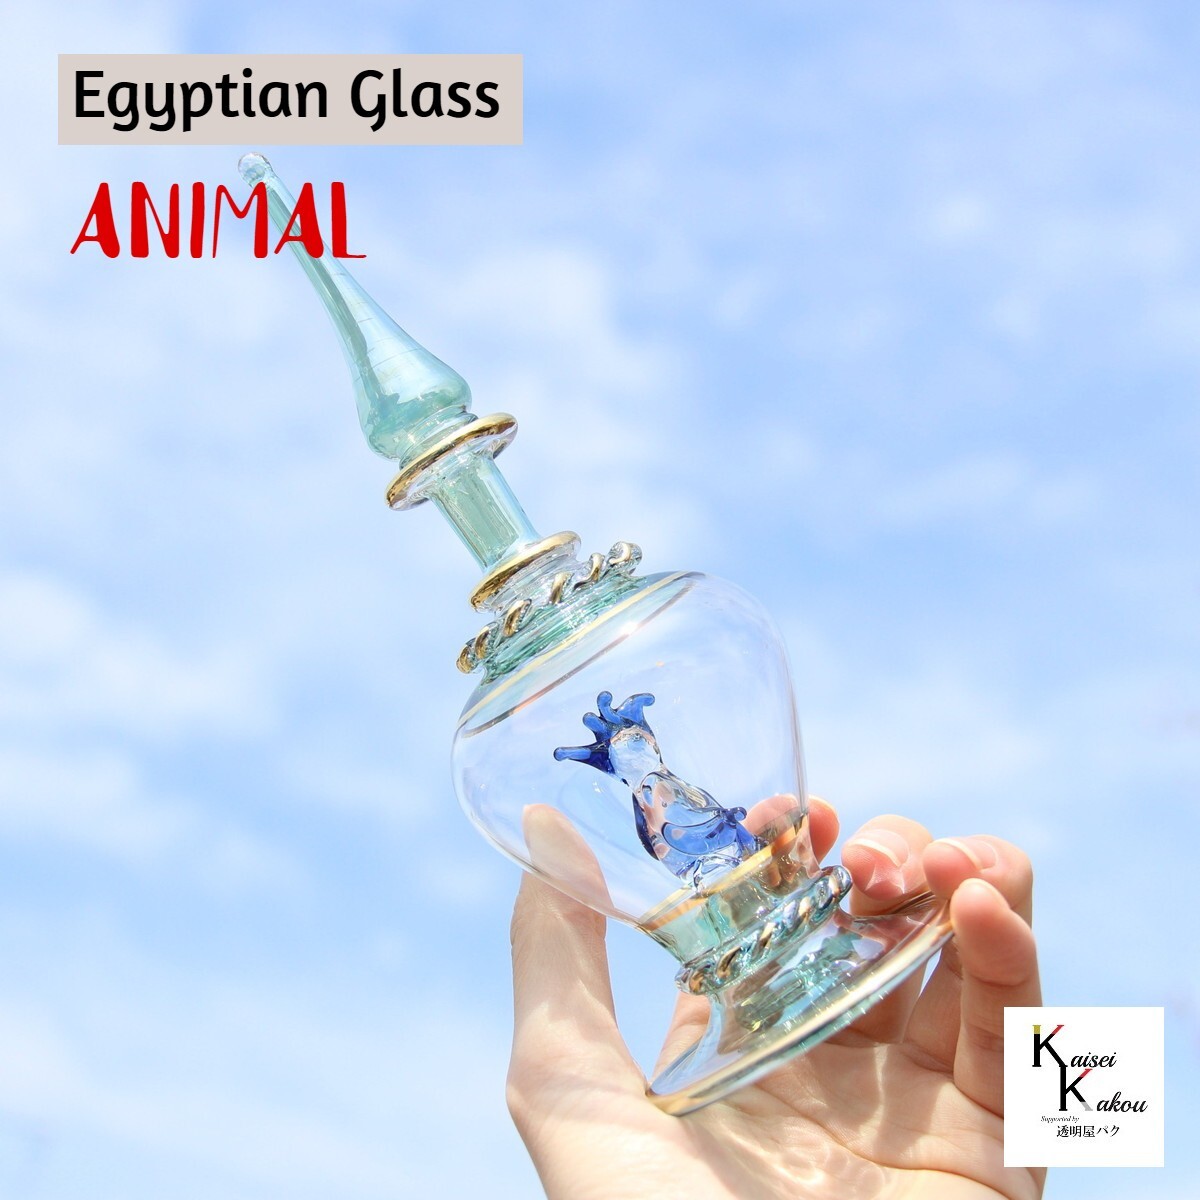 『エジプトボトル アニマル グリーン 鳥』エジプシャンボトル　香水ボトル　香水瓶　ガラス細工 本場エジプト直輸入 伝統的な吹きガラスの製法で一つひとつ吹き、作り上げた香水瓶（パフュームボトル）です。置物や香水入れ、アロマ、アトマイザー、様々な用途に。使い方は自由自在です。選べるのは外側の色と動物のみとなります。形状はお選びいただけません。※色味は個々により微妙に異なります。ハンドメイド品につき、細かな装飾（金メッキや波模様を含む）や形、大きさ、色味が異なります。特にピンクパープル系、ブルーパープル系は、ひとつひとつの色味が異なります。ご注意ください。また、小傷等ある場合もございます。製品はとてもデリケートなため、接触、圧力、温度変化により、塗装やメッキがダメージを受けることがございます。お取り扱いには十分にご注意ください。全く同じもののお届けはできませんので、あらかじめご了承ください。【全体サイズ】高さ約13cm±2cmまた、本製品はハンドメイド品のため、世界に同じものはひとつとて、ありません。【素材】本体：ガラス 2